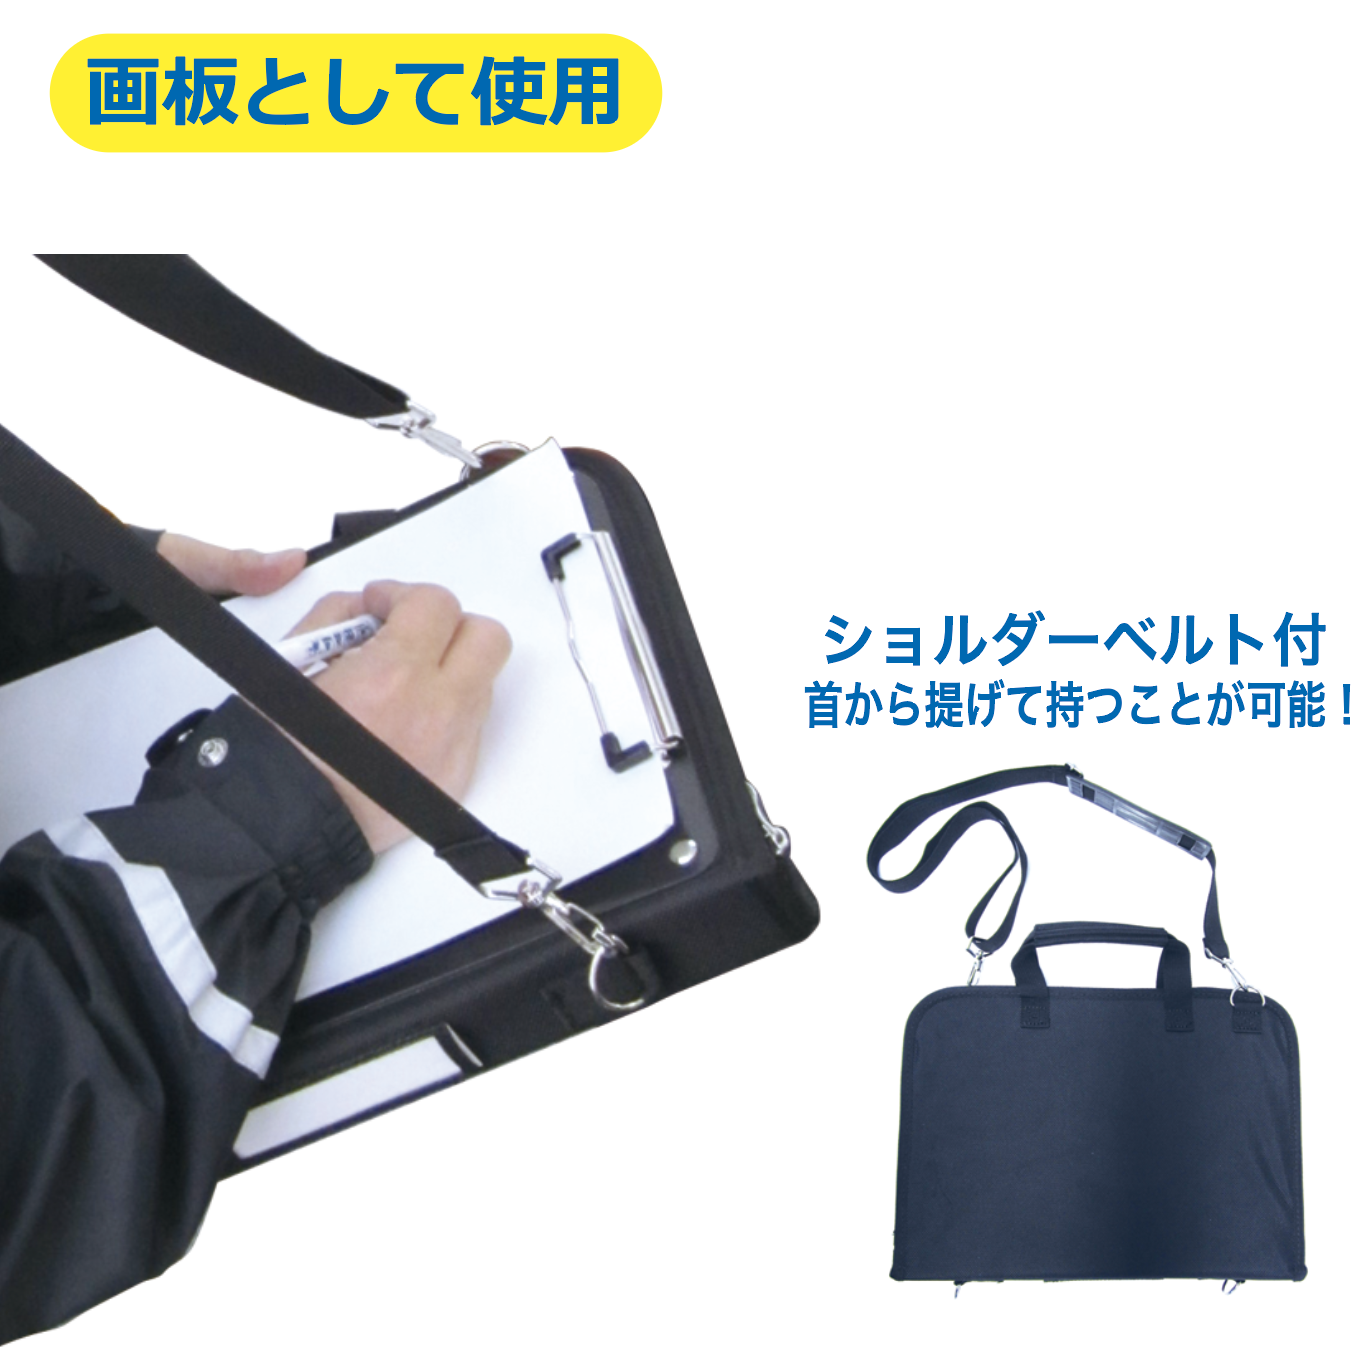 【軽量】多機能バインダーバッグの商品画像